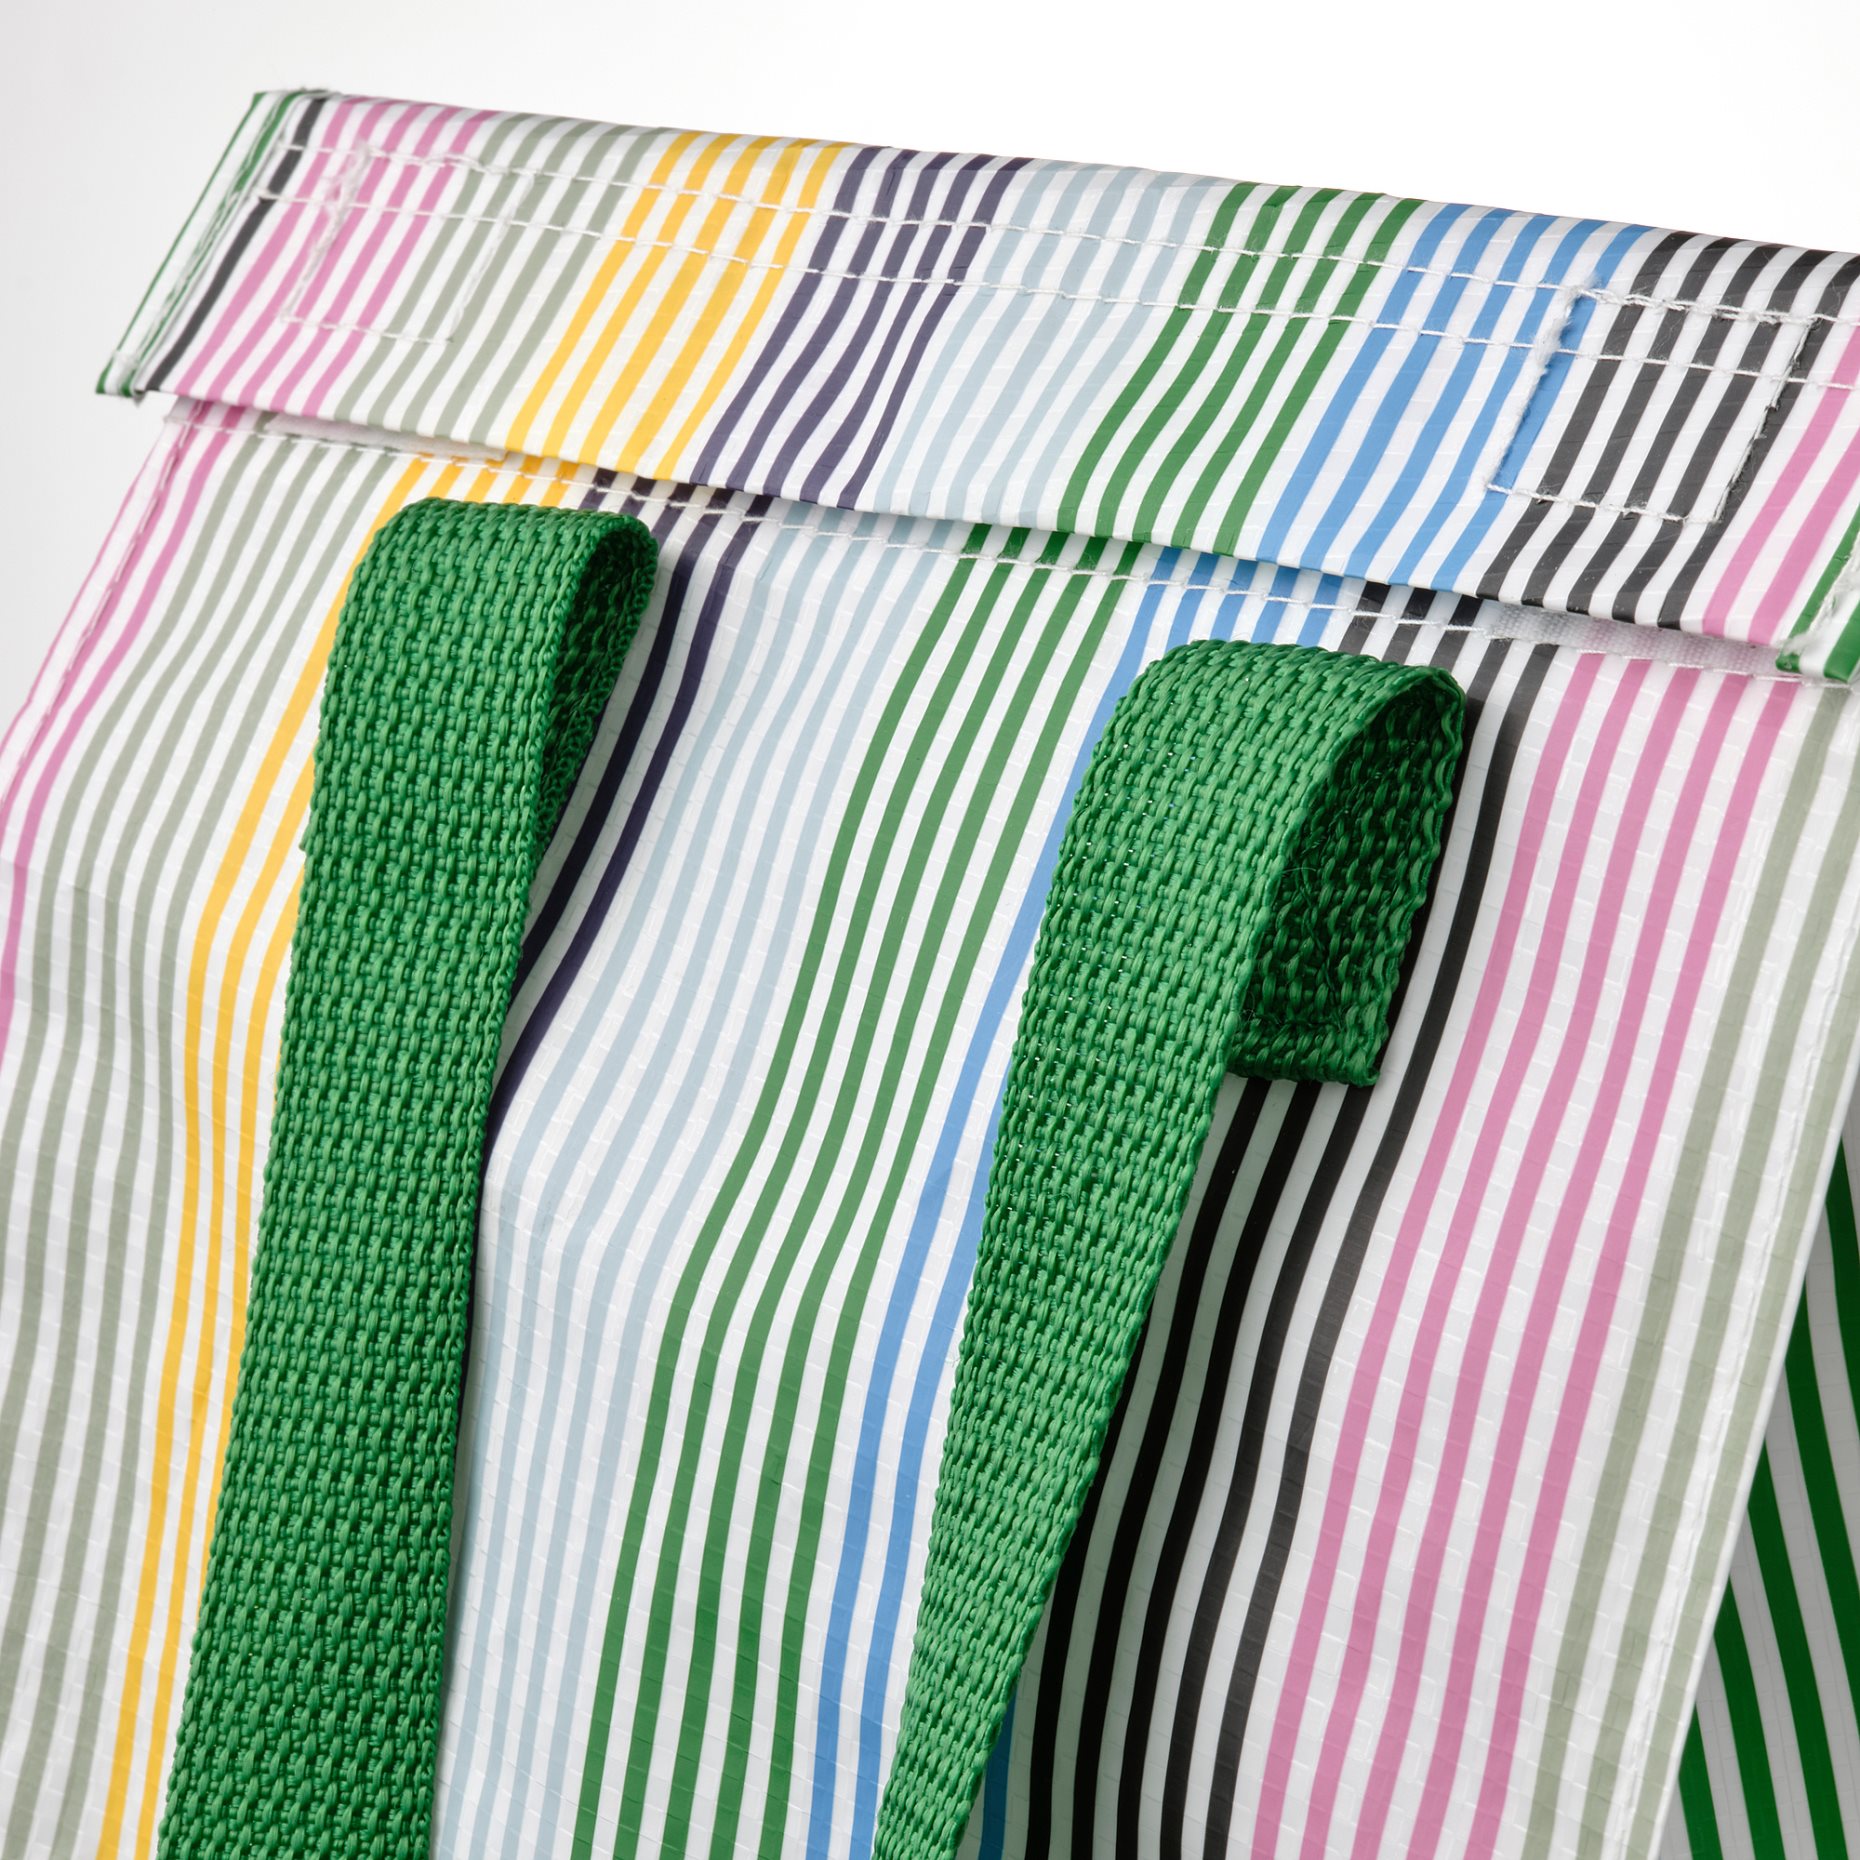 FLADDRIG, lunch bag/striped, 25x16x27 cm, 005.493.39